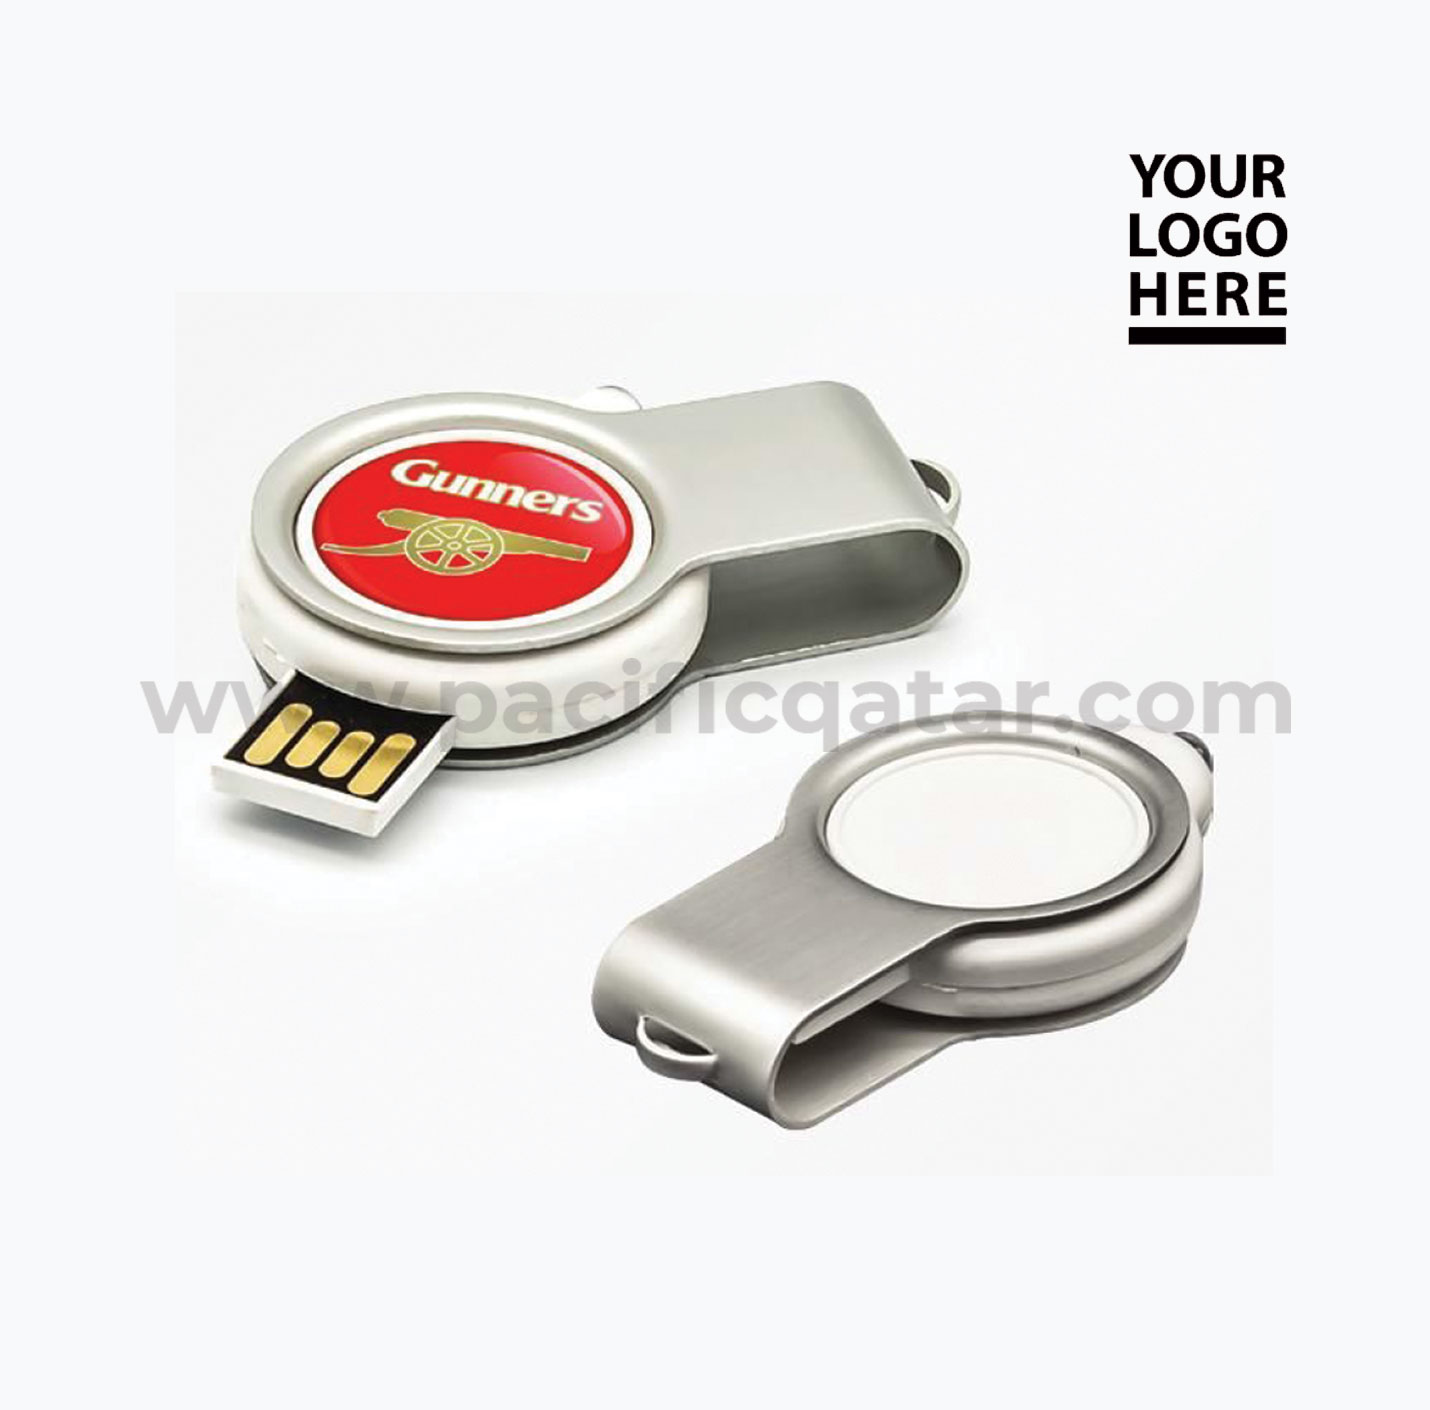 LED Light USB Flash Drive with epoxy logo